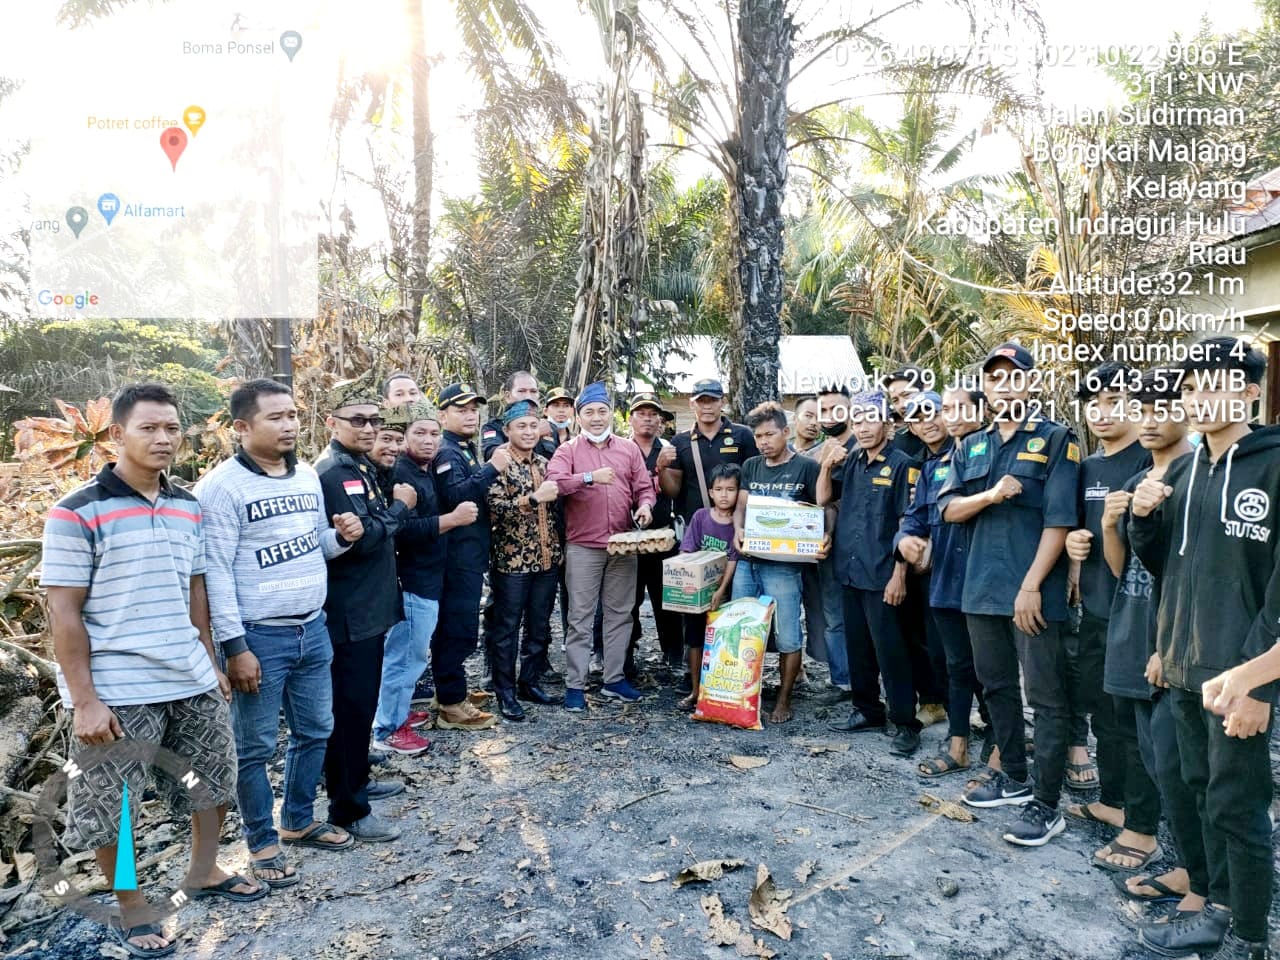 Lembaga Laskar Melayu Bersatu Inhu Kembali Salurkan Bantuan Kepada Korban Kebakaran